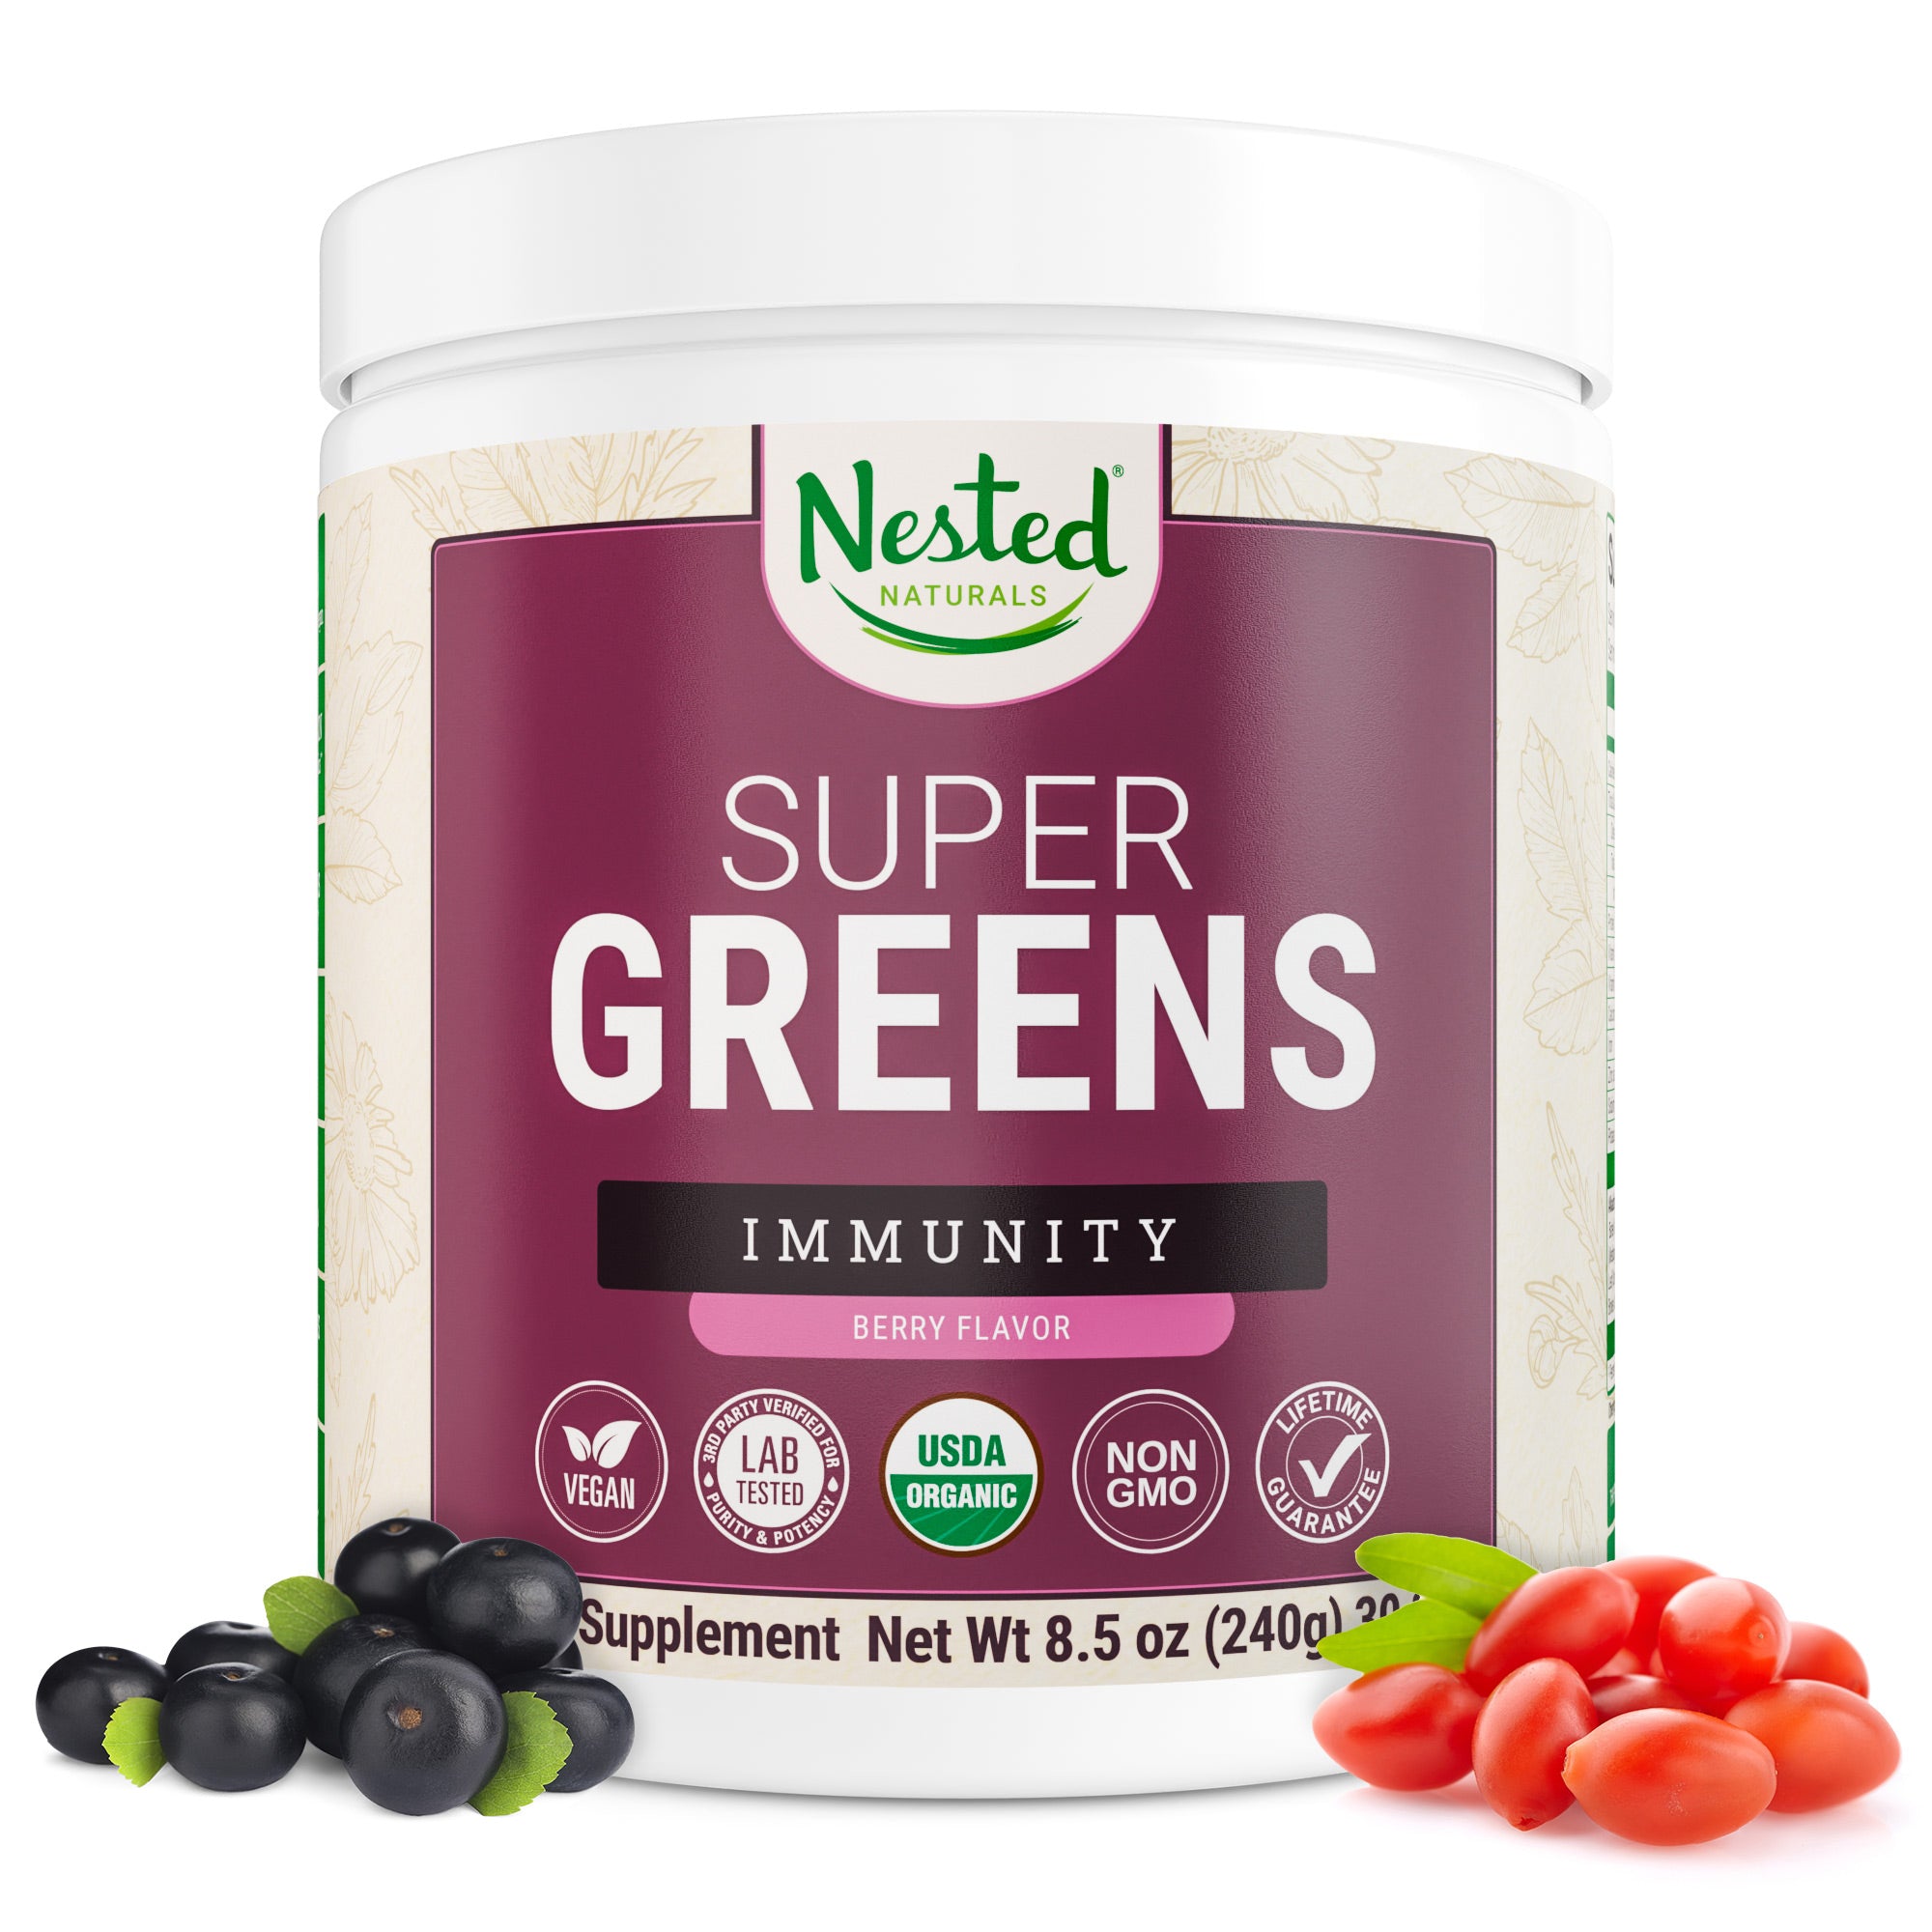 Super Greens Immunity